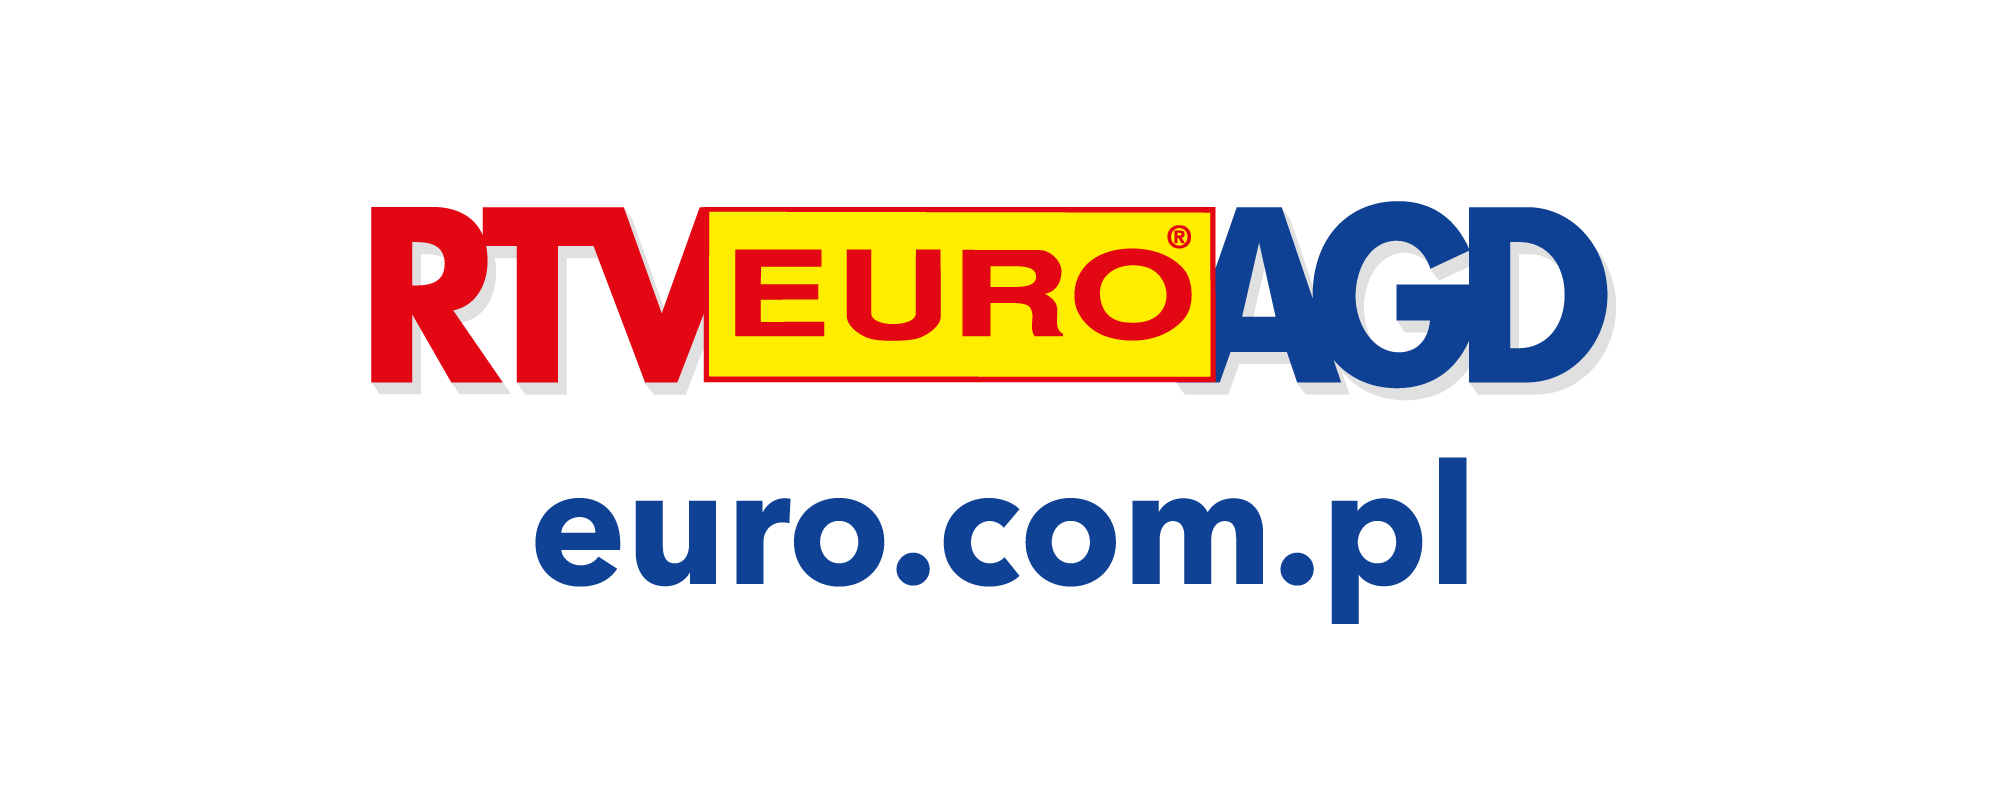 RTV EURO AGD_logo